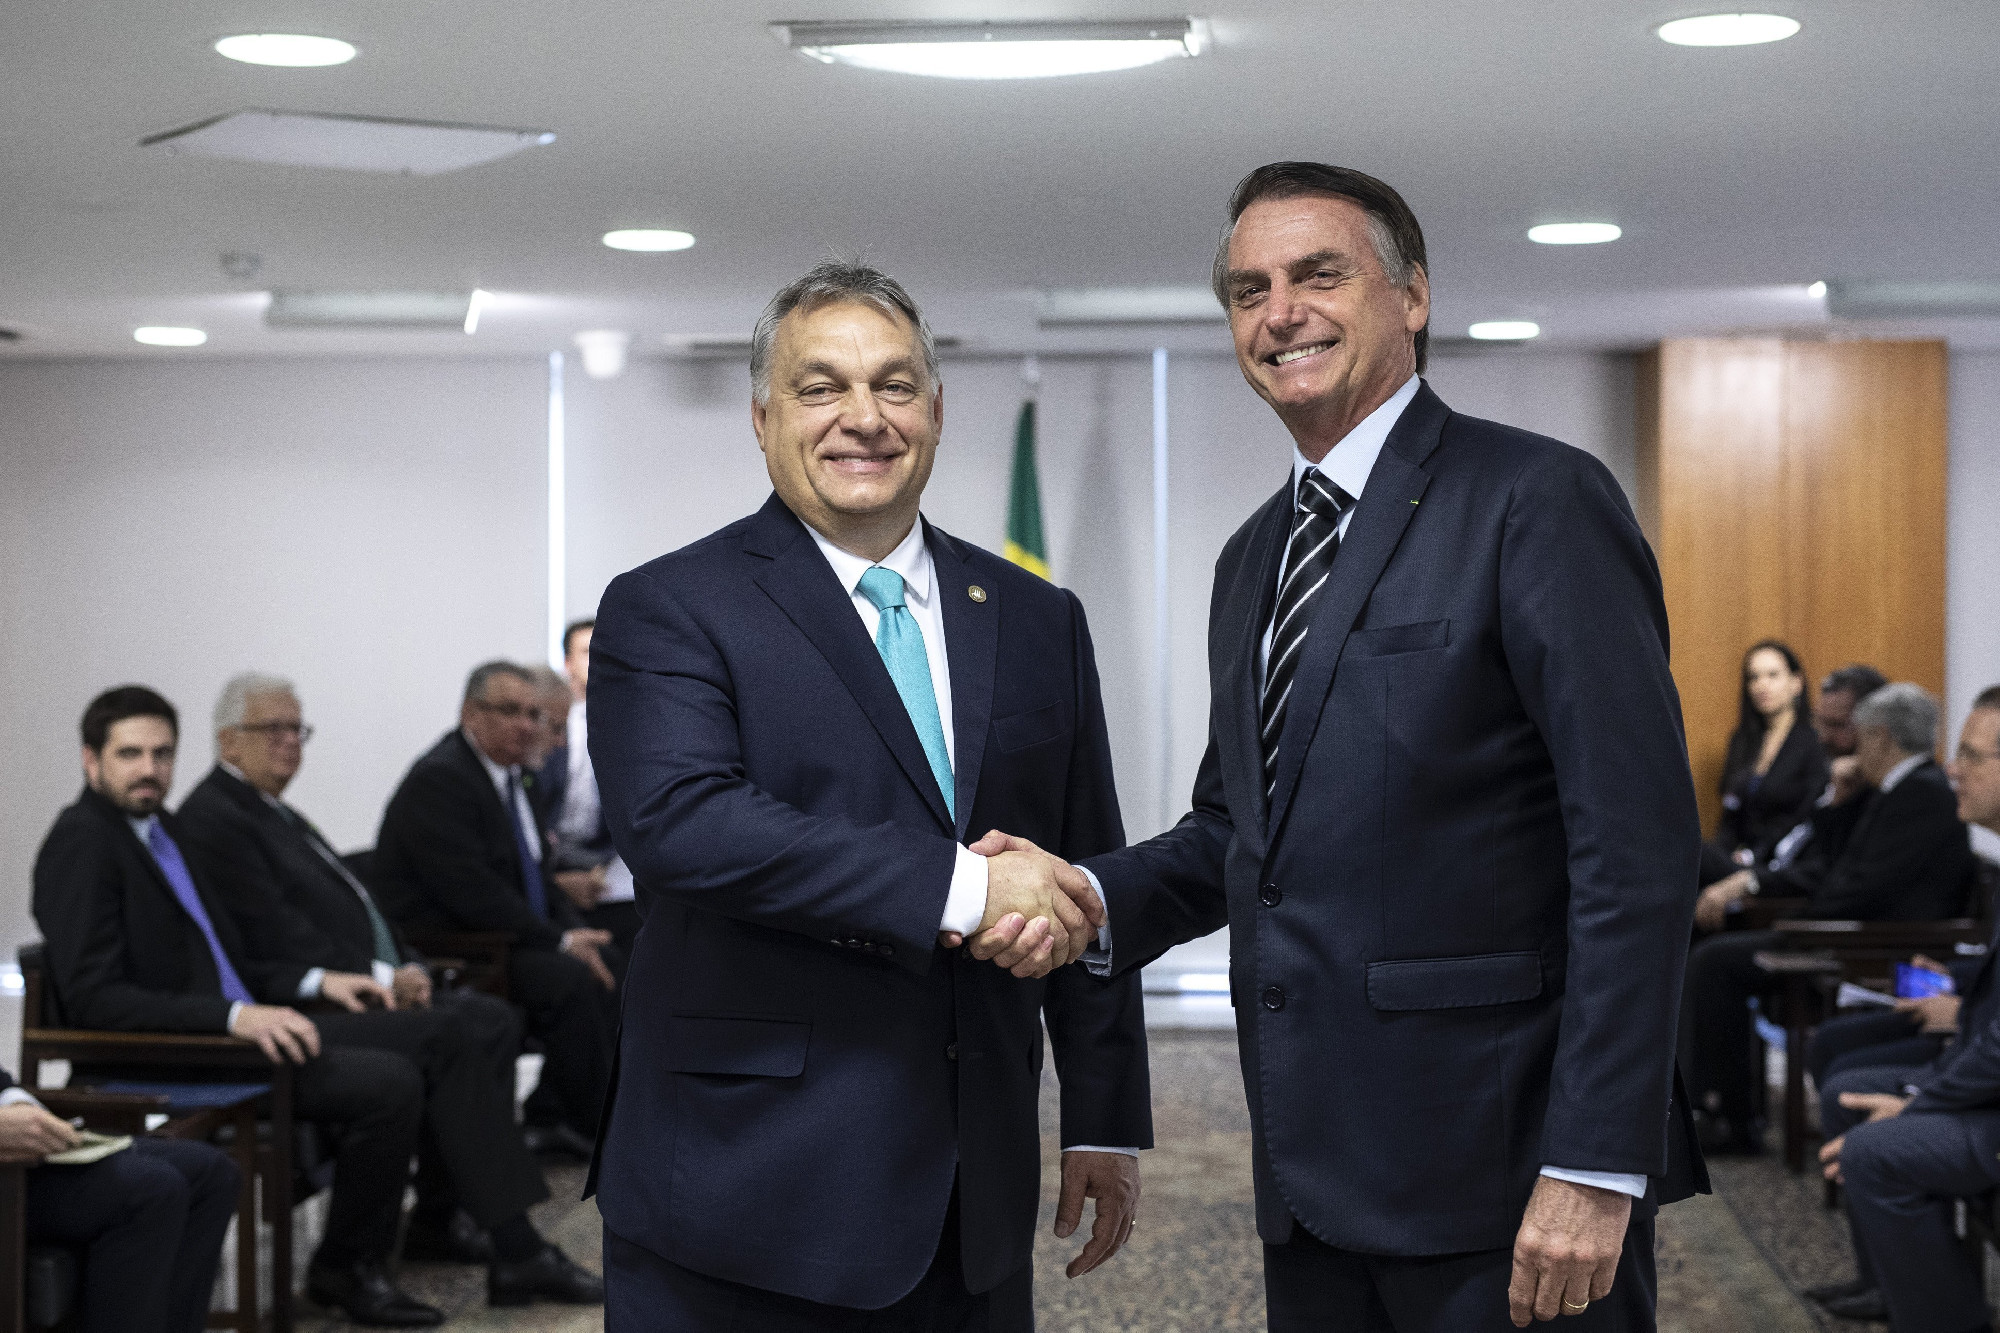 Bolsonaro brazil elnök Magyarországra jön, hogy tárgyaljon Orbán Viktorral